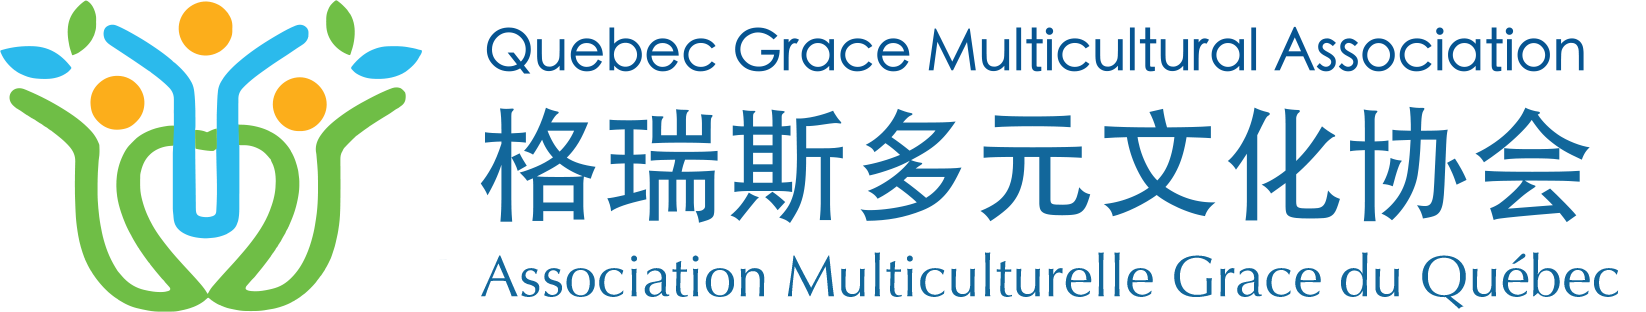 格瑞斯多元文化协会 | Quebec Grace Multicultural Association